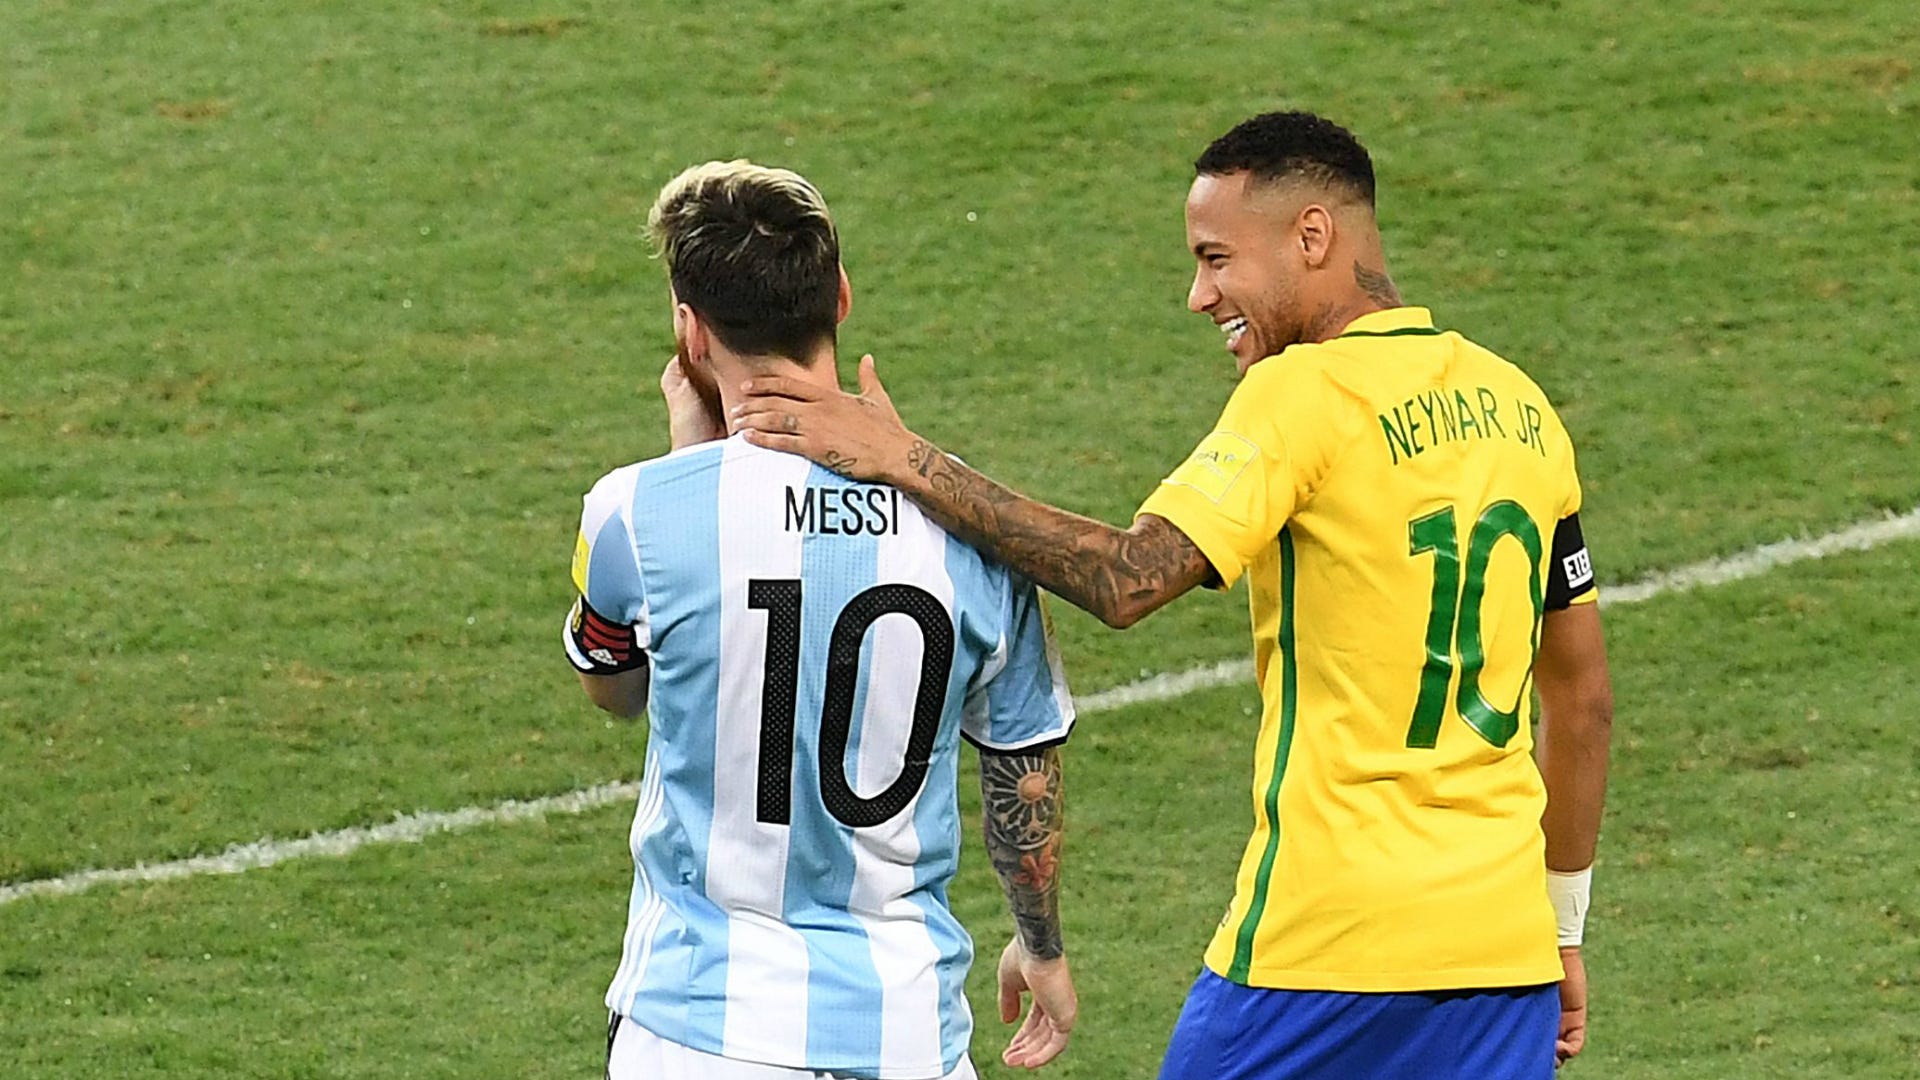 Brazil vs Argentina: Trận đấu giữa hai đội tuyển quốc gia hàng đầu của khu vực Nam Mỹ luôn là niềm mong đợi của các CĐV bóng đá trên khắp thế giới. Cùng xem hình ảnh của các siêu sao như Neymar, Messi, Aguero trong cuộc đối đầu kinh điển này.